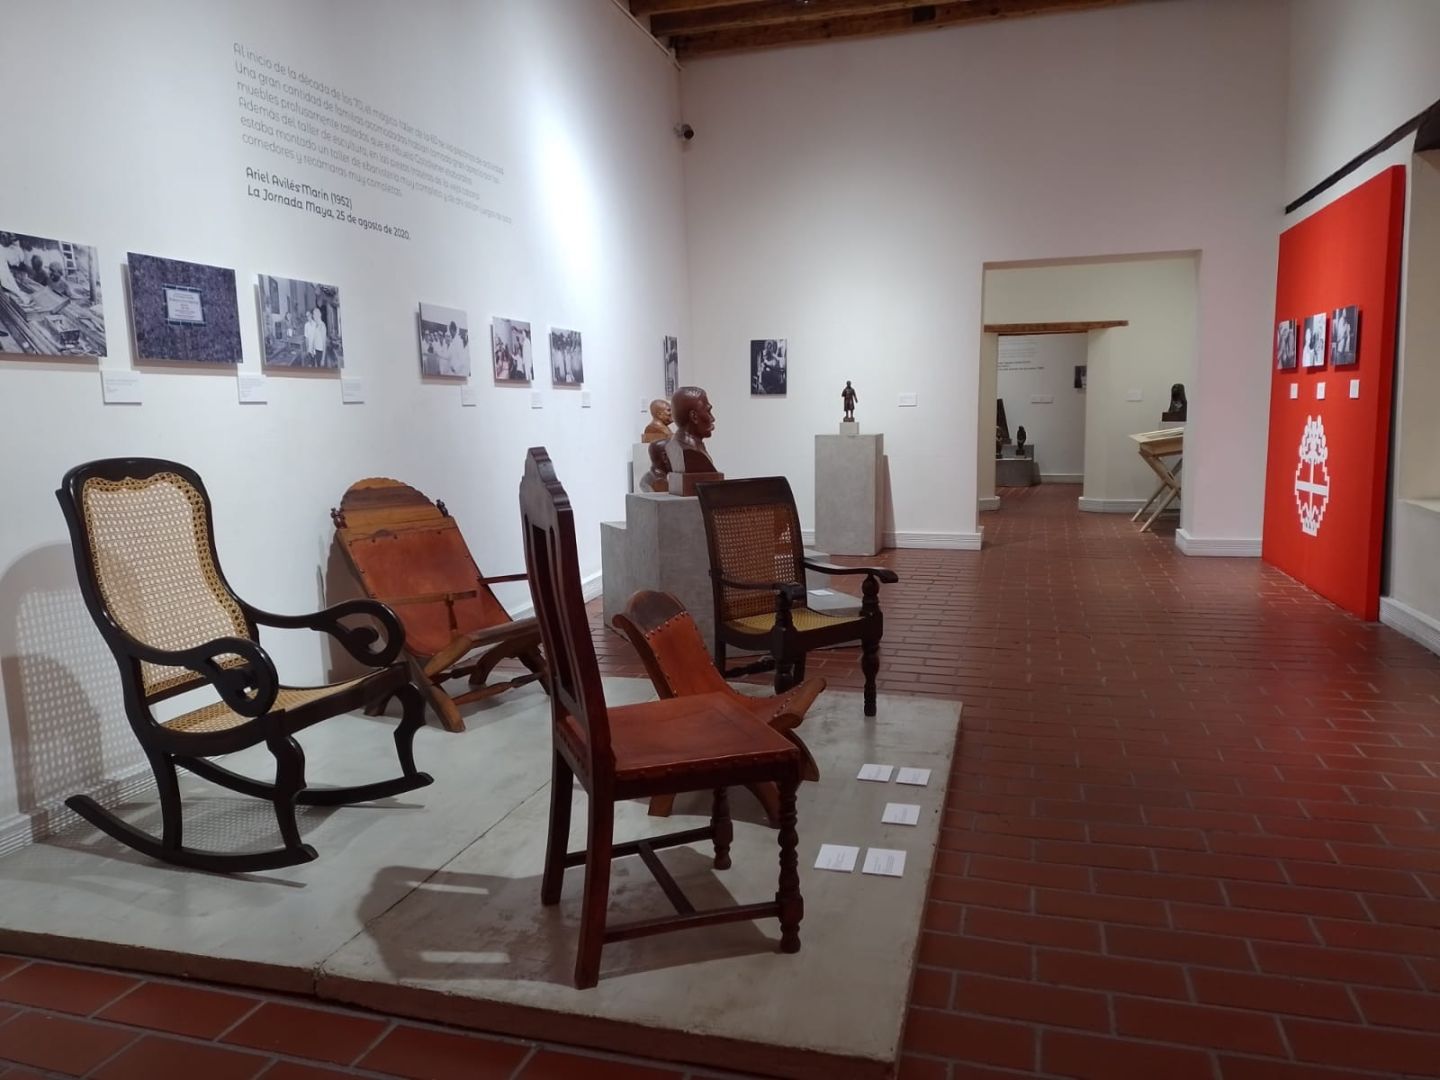 Ofrece Corredor de la Plástica
Mexiquense Tres Museos Para Visitar.